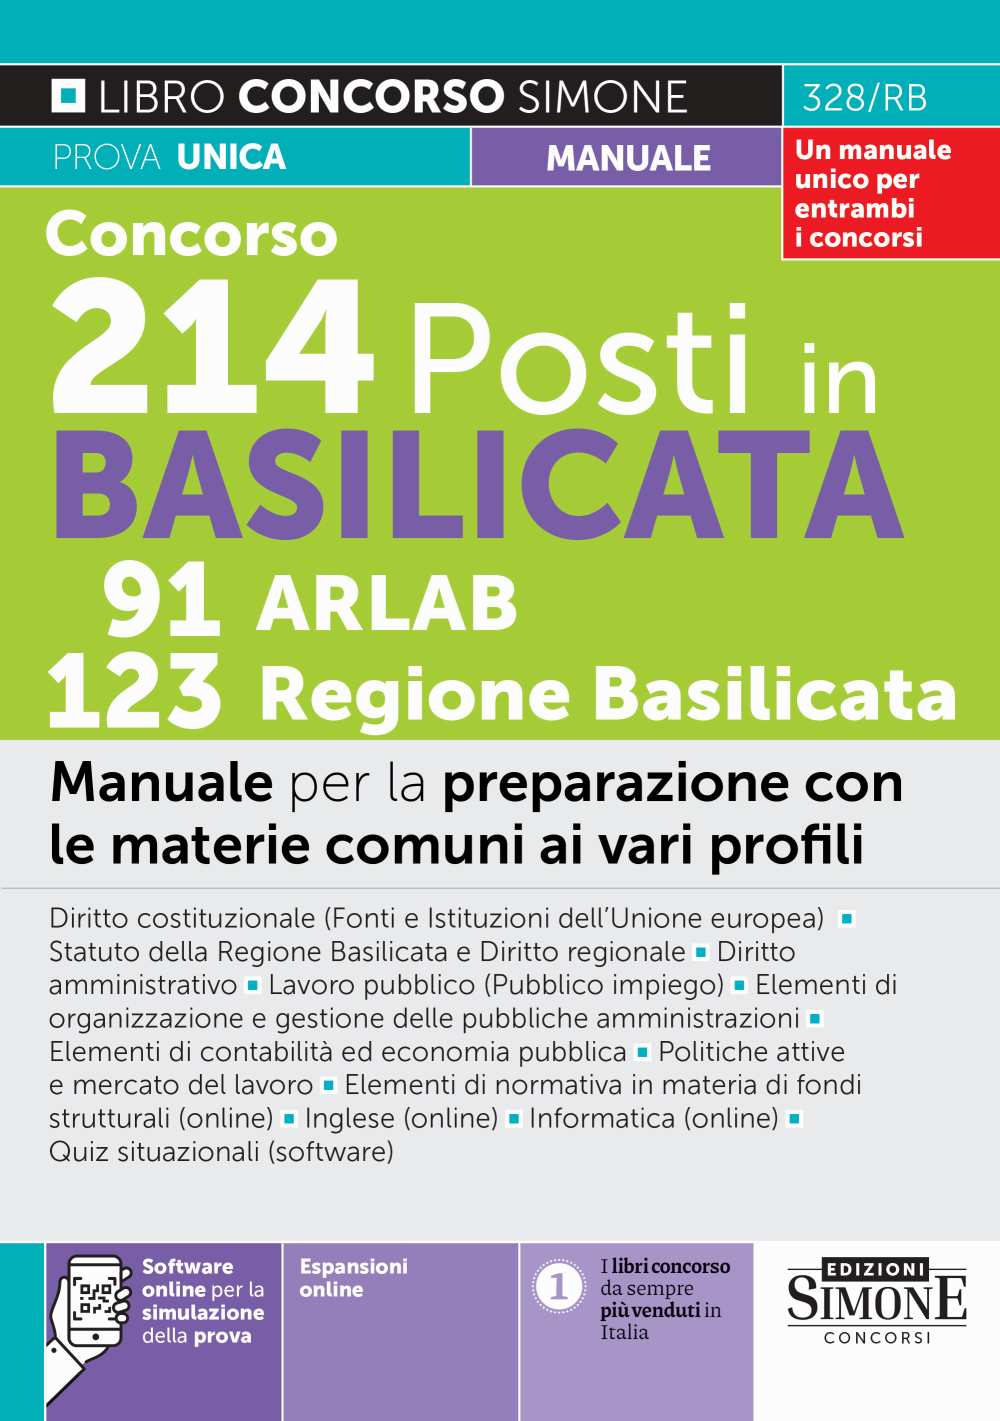 Concorsi 214 Posti in Basilicata 91 ARLAB 123 Regione Basilicata - Manuale - 328/RB